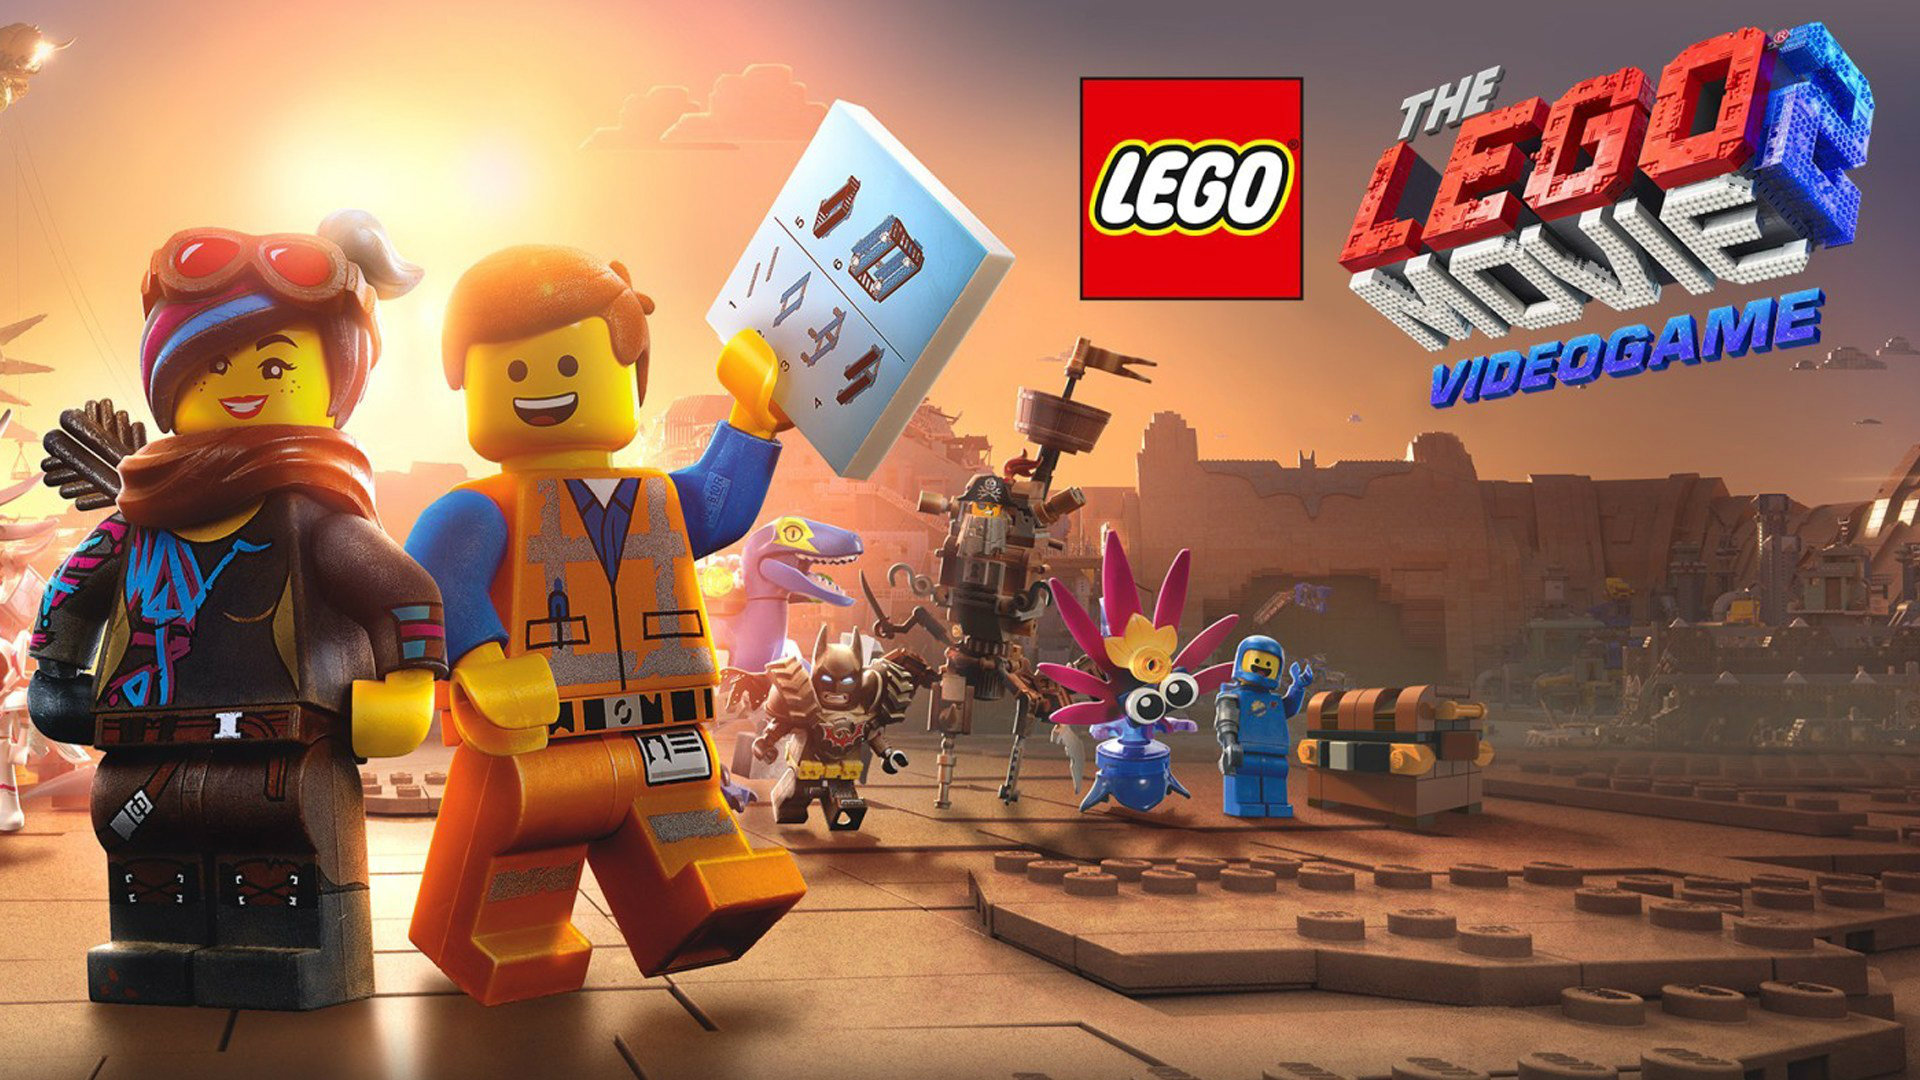 بررسی بازی The Lego Movie 2 Videogame – اینجا هیچ چیز شگفت انگیز نیست